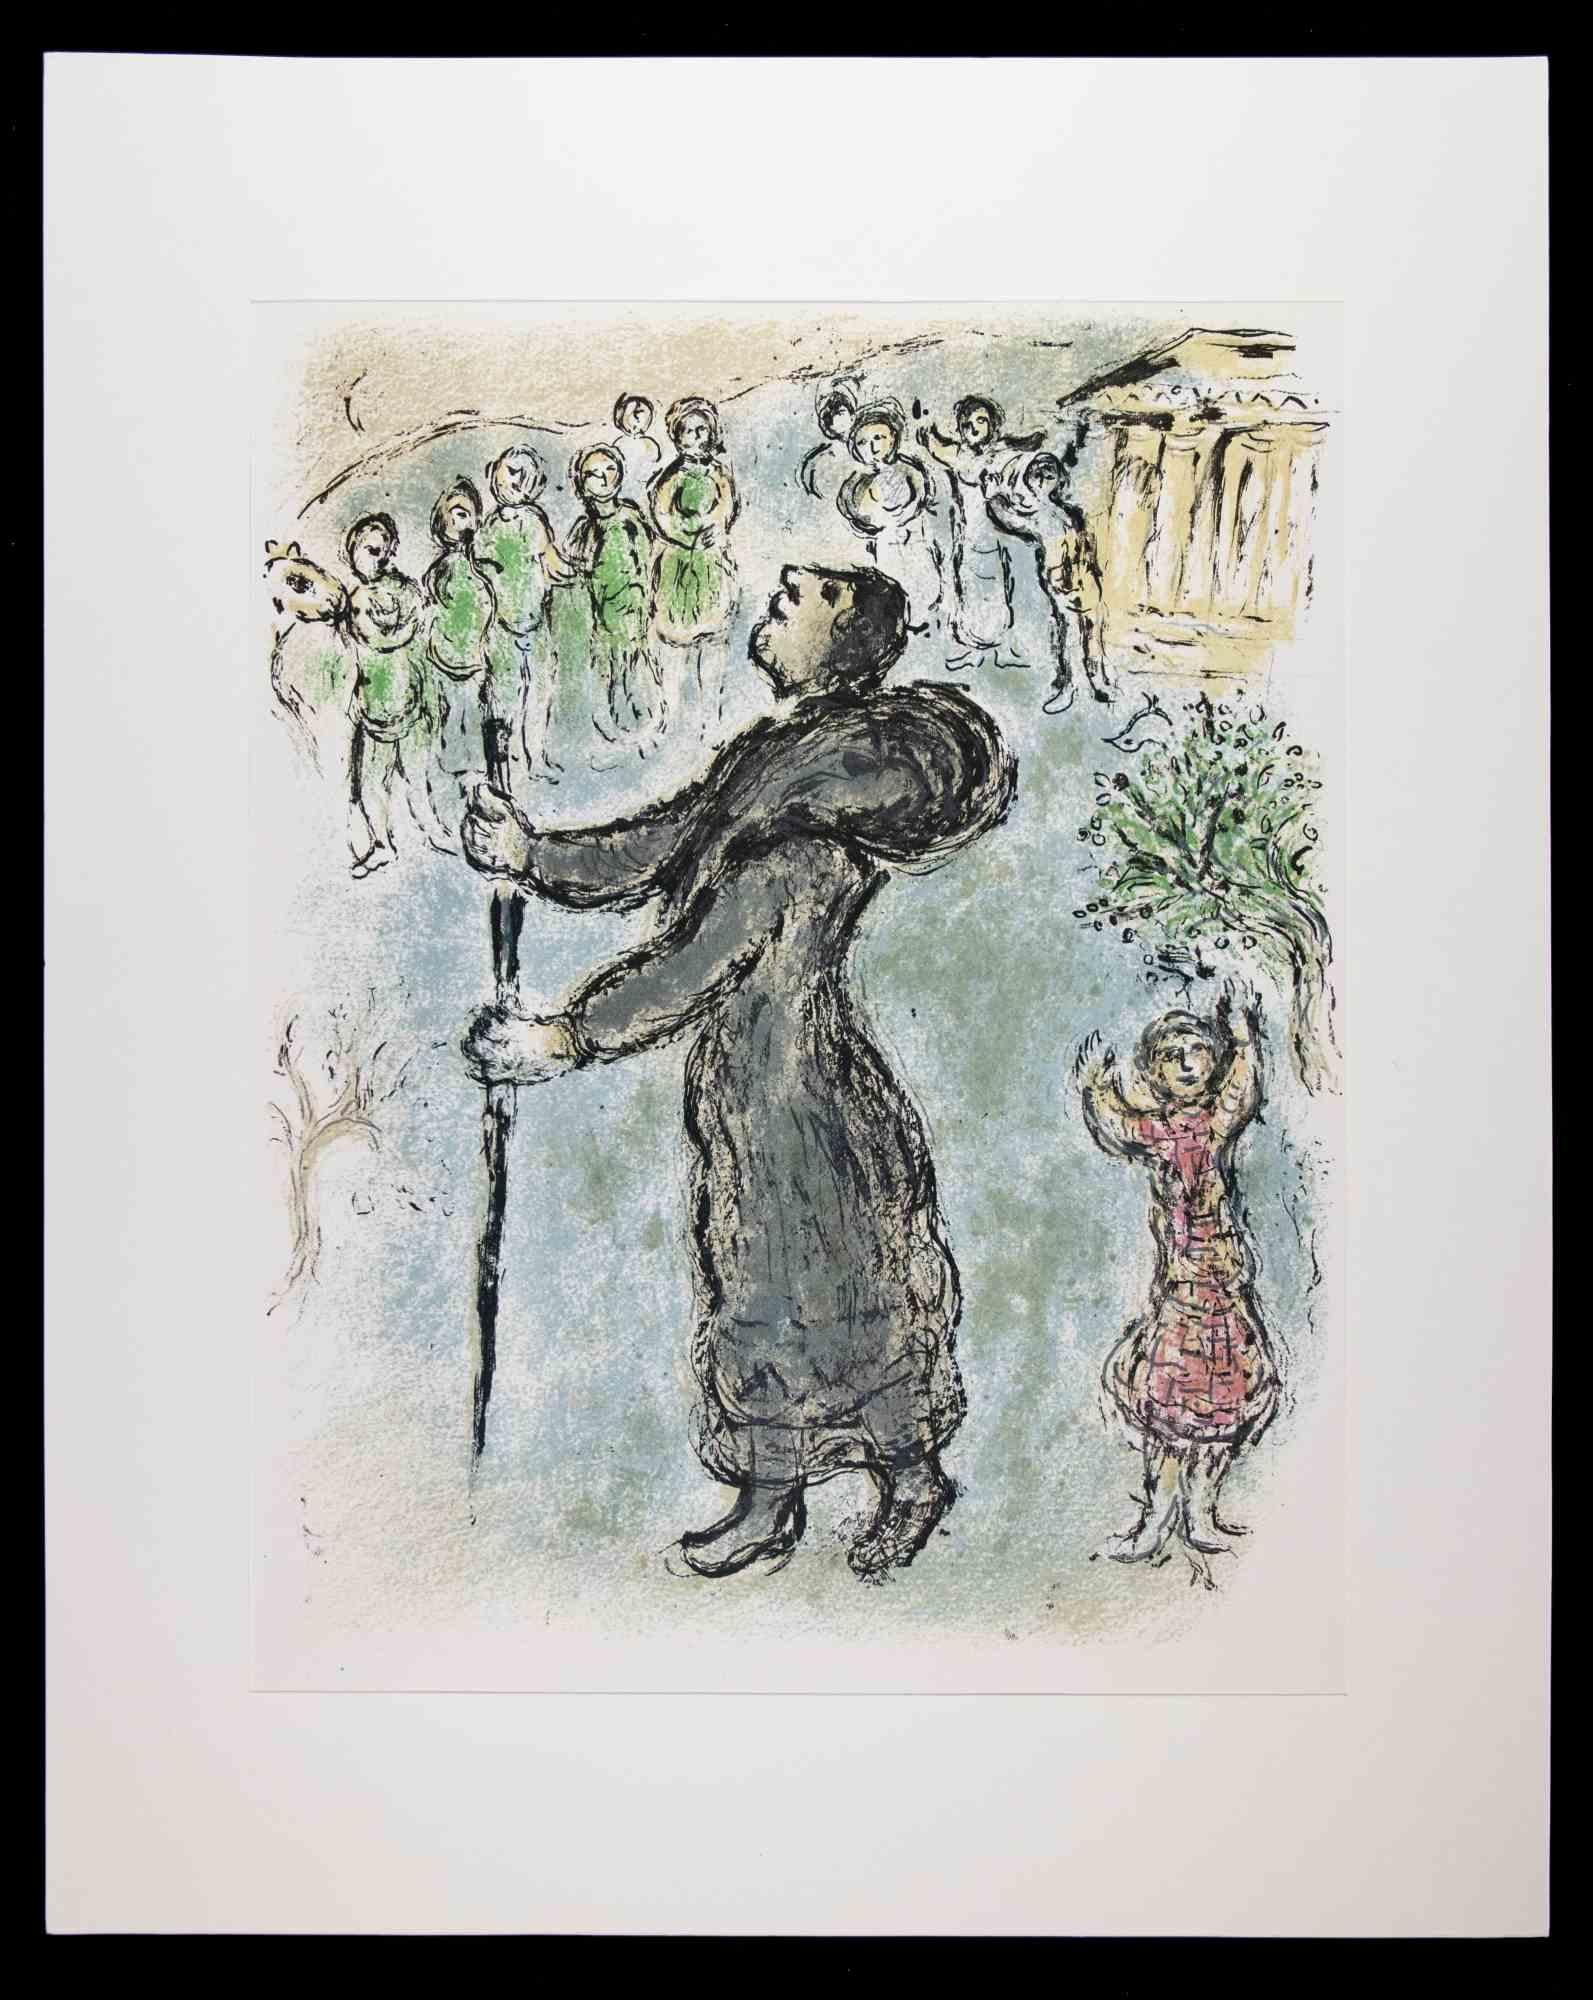 Odysseus als Bettler verkleidet - Aus der Suite "Odyssee" ist eine prächtige Farblithographie nach Marc Chagall aus dem Jahr 1963.

Farbige Lithographie auf Papier. Herausgegeben von Daco, Stuttgart 1989.

Dieser schöne Druck gehört zu der Suite